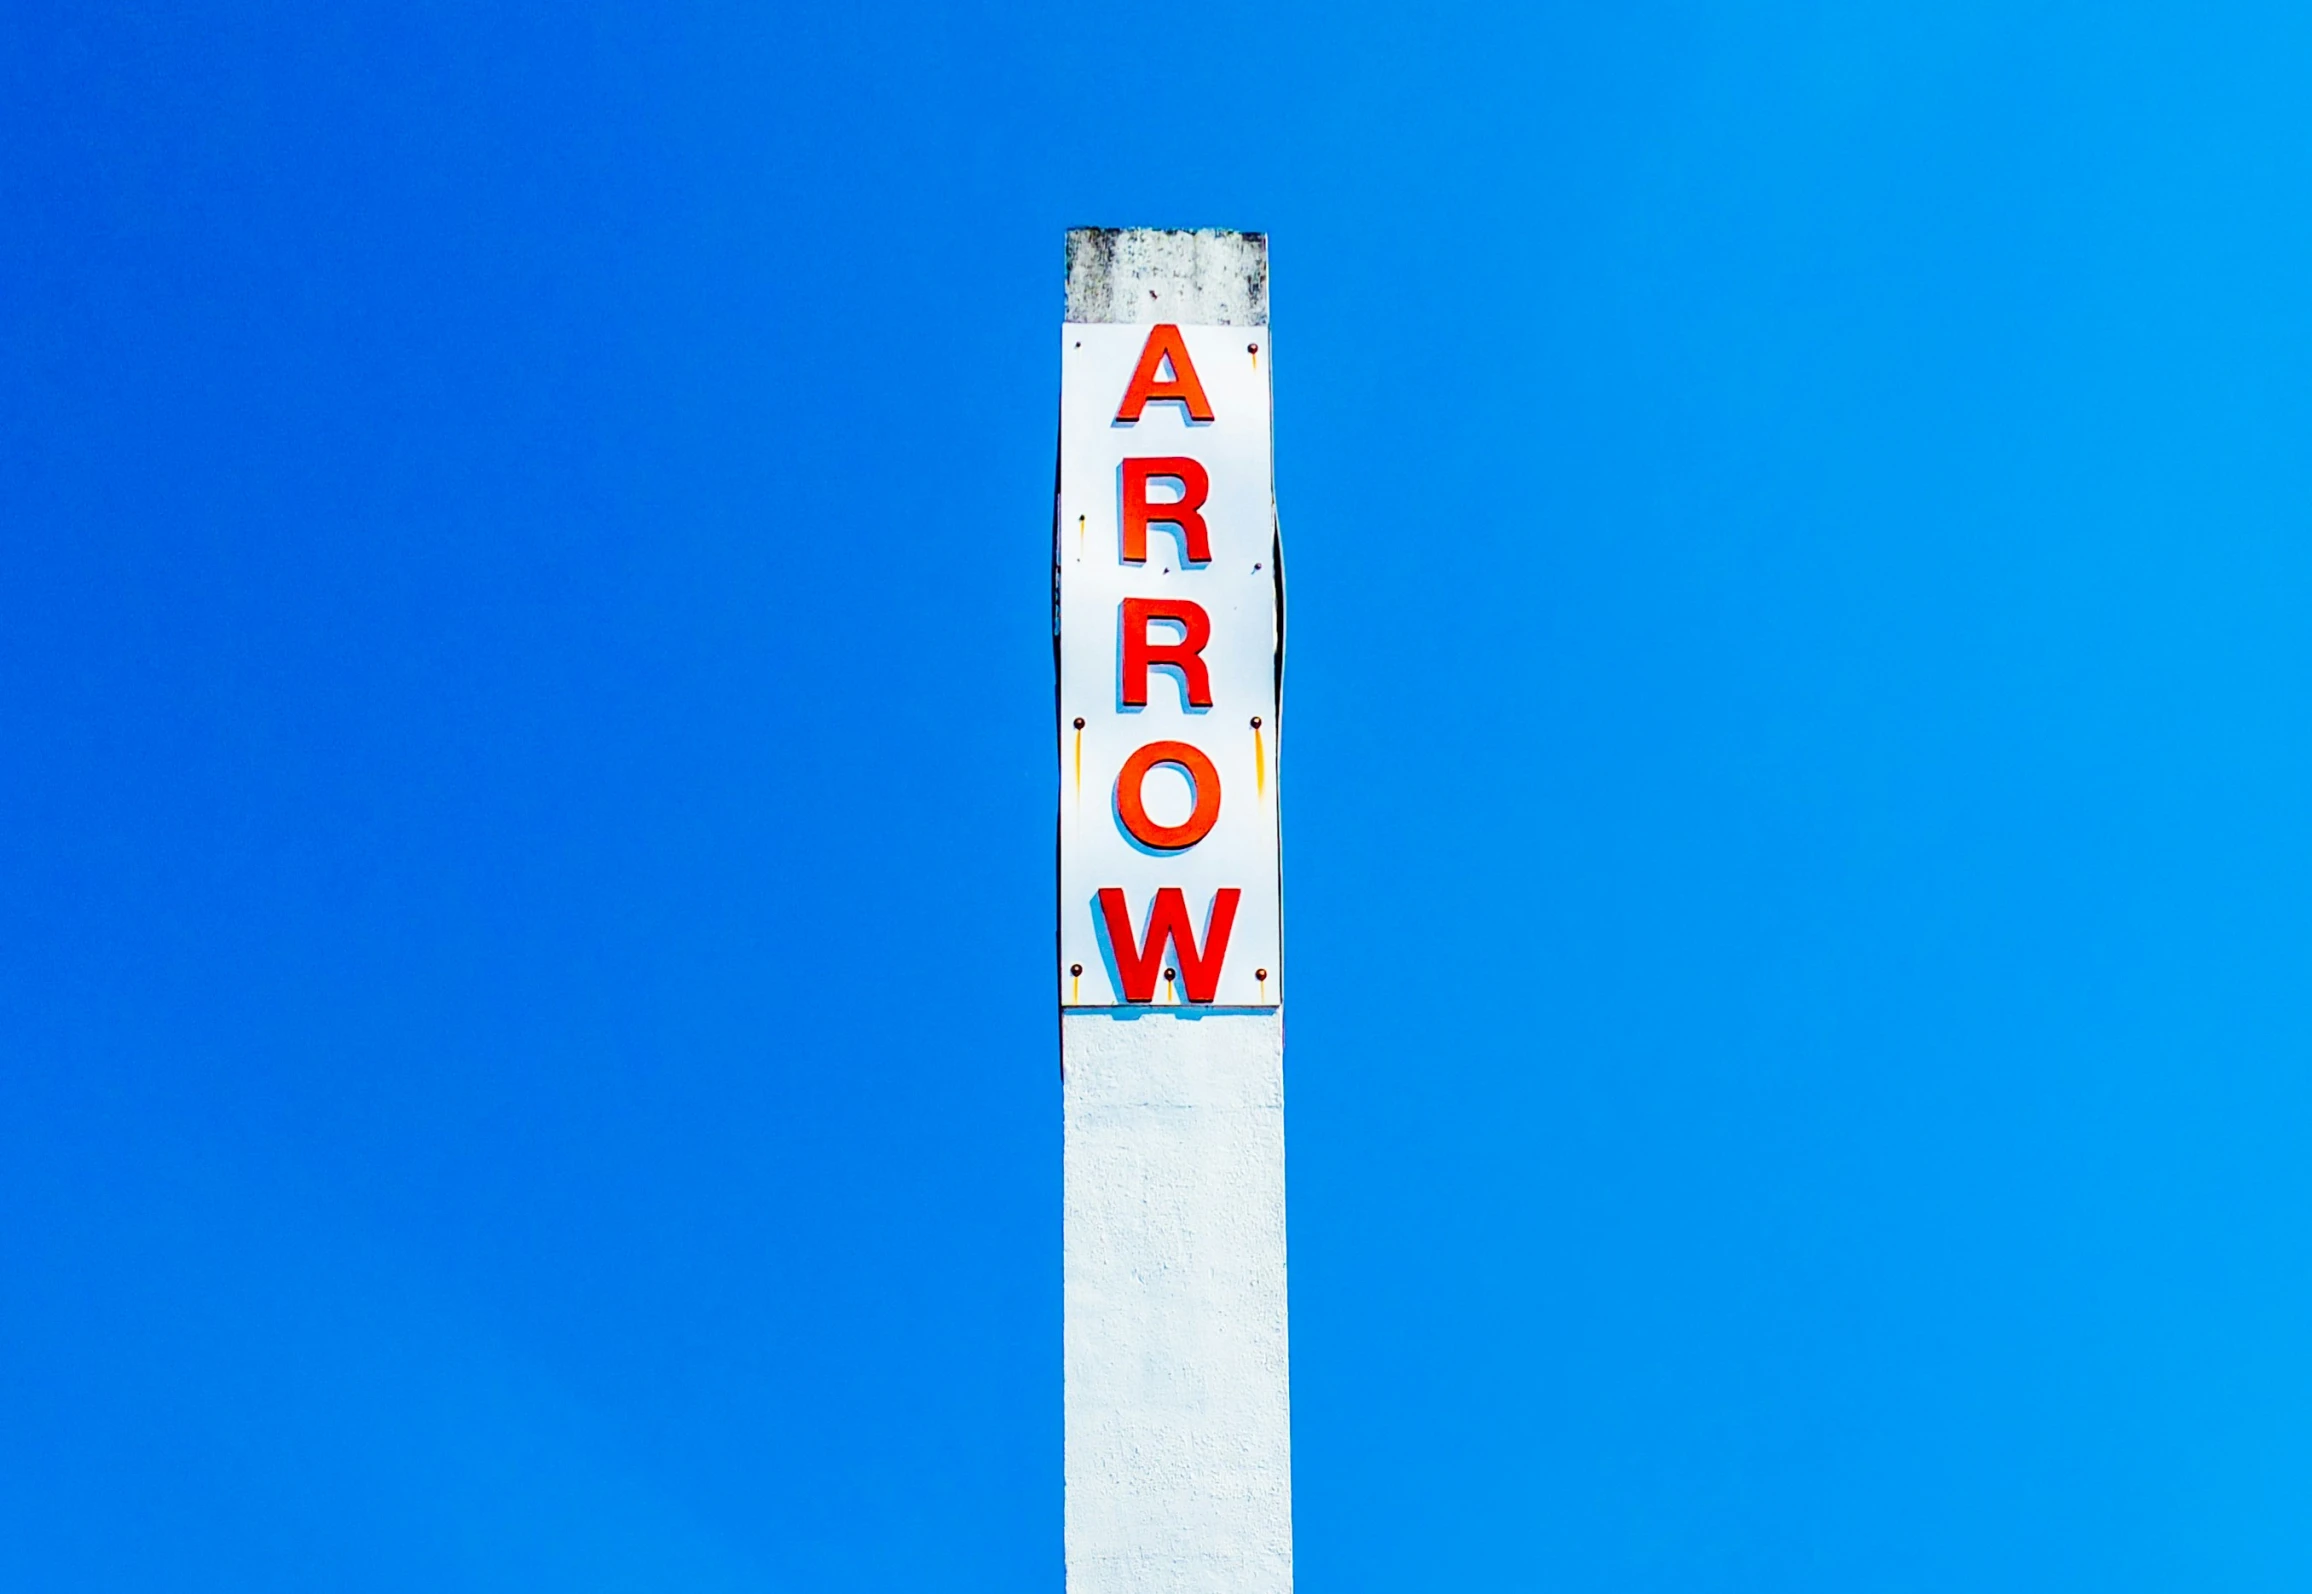 an arrow sign in the sky under a blue sky